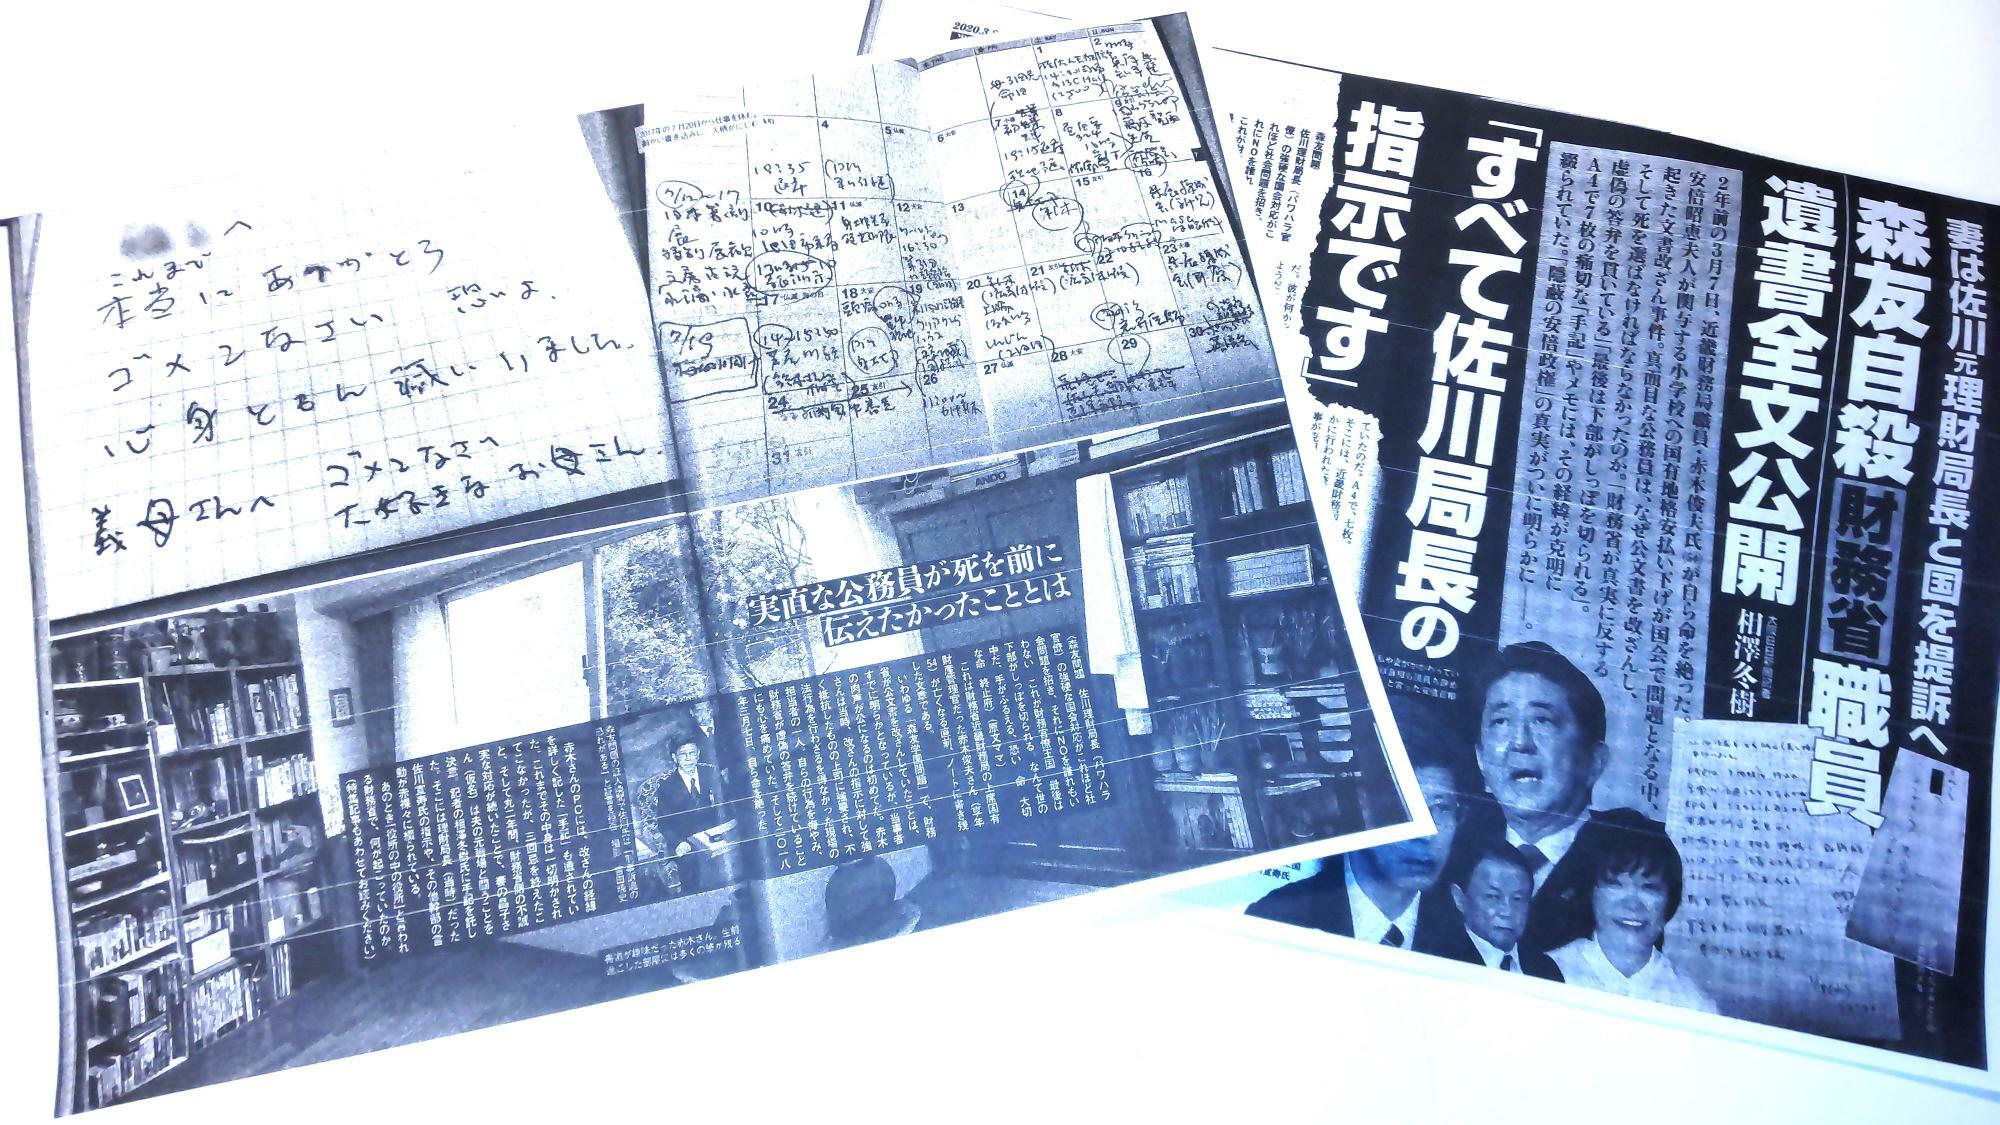 週刊文春2020年3月26日号(18日発売)に掲載された相澤冬樹氏のスクープ記事。モノクログラビア3ページを含む計15ページにわたる特集は大きな反響を呼び、同誌は53万部を完売した（筆者撮影）